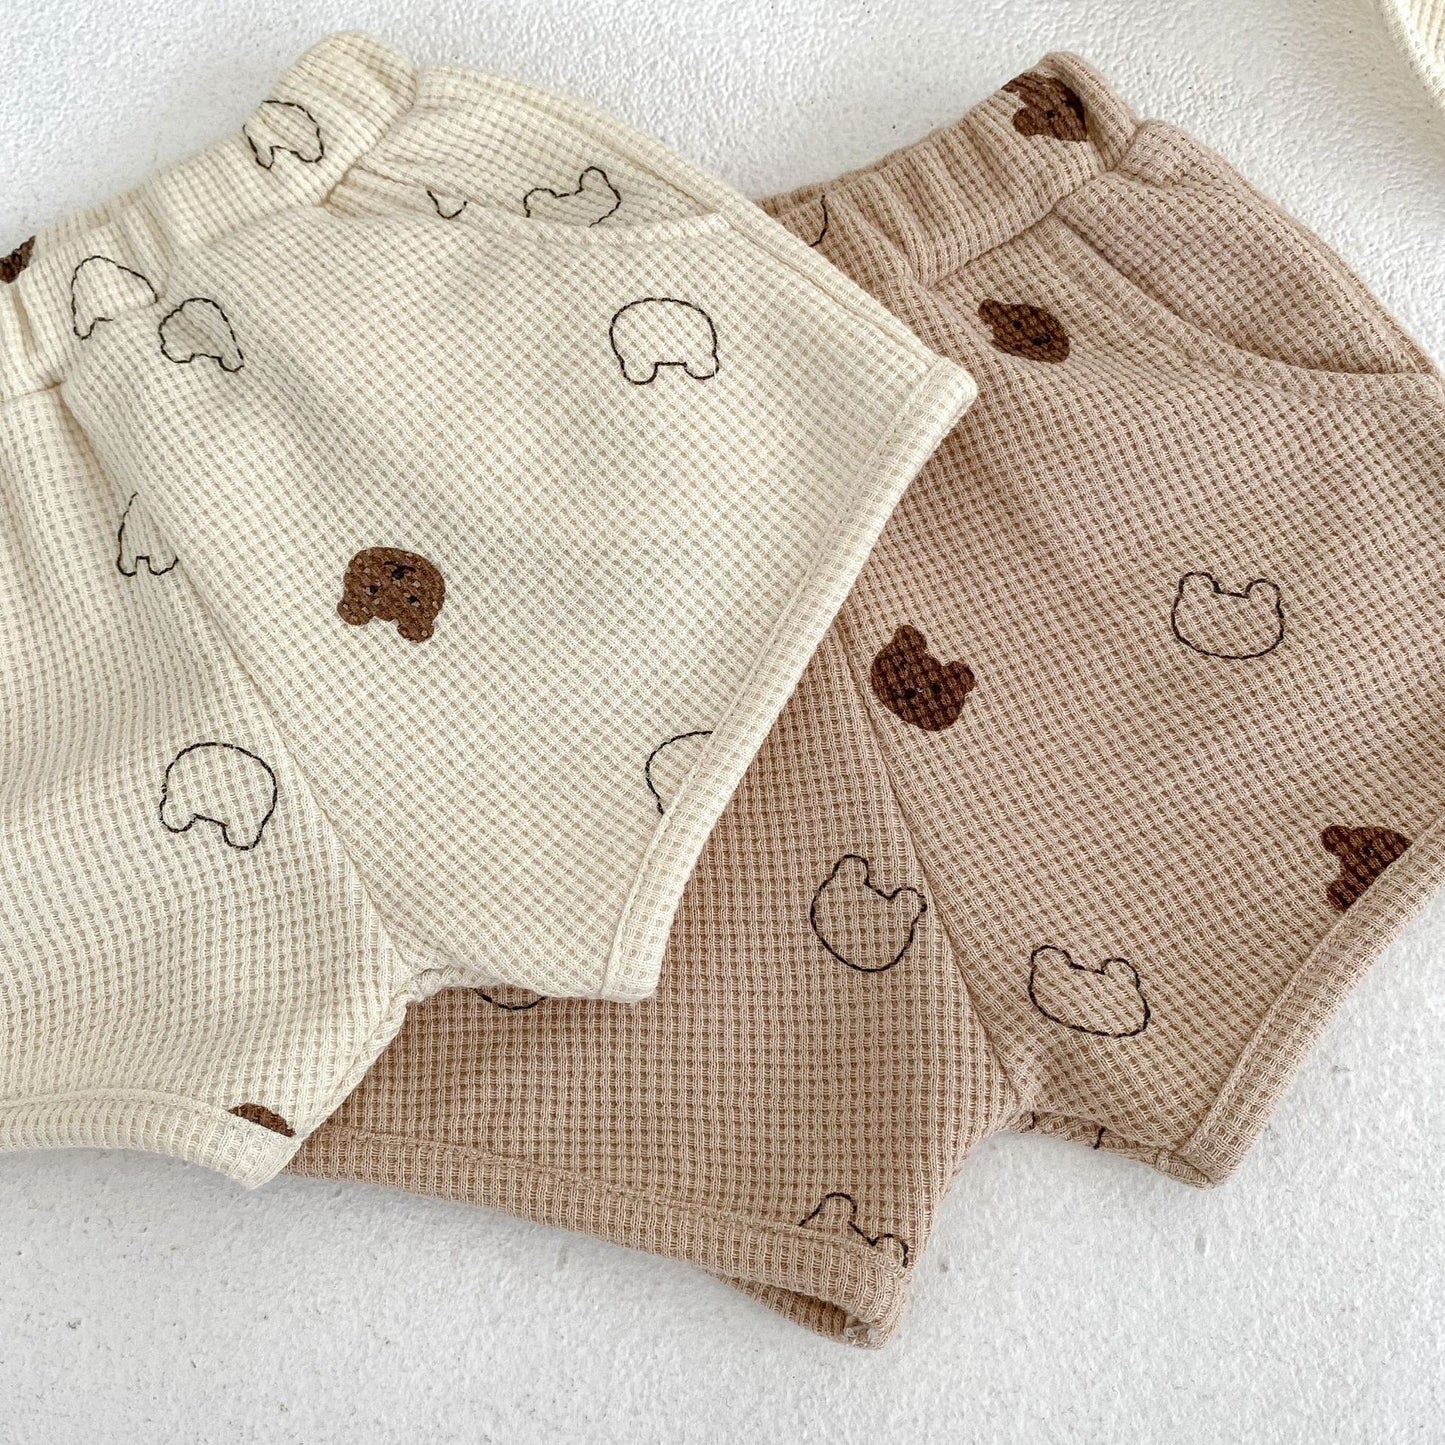 【K5152】ins新款嬰幼兒寶寶短袖套裝全棉華夫格小熊T恤上衣休閒短褲兩件套